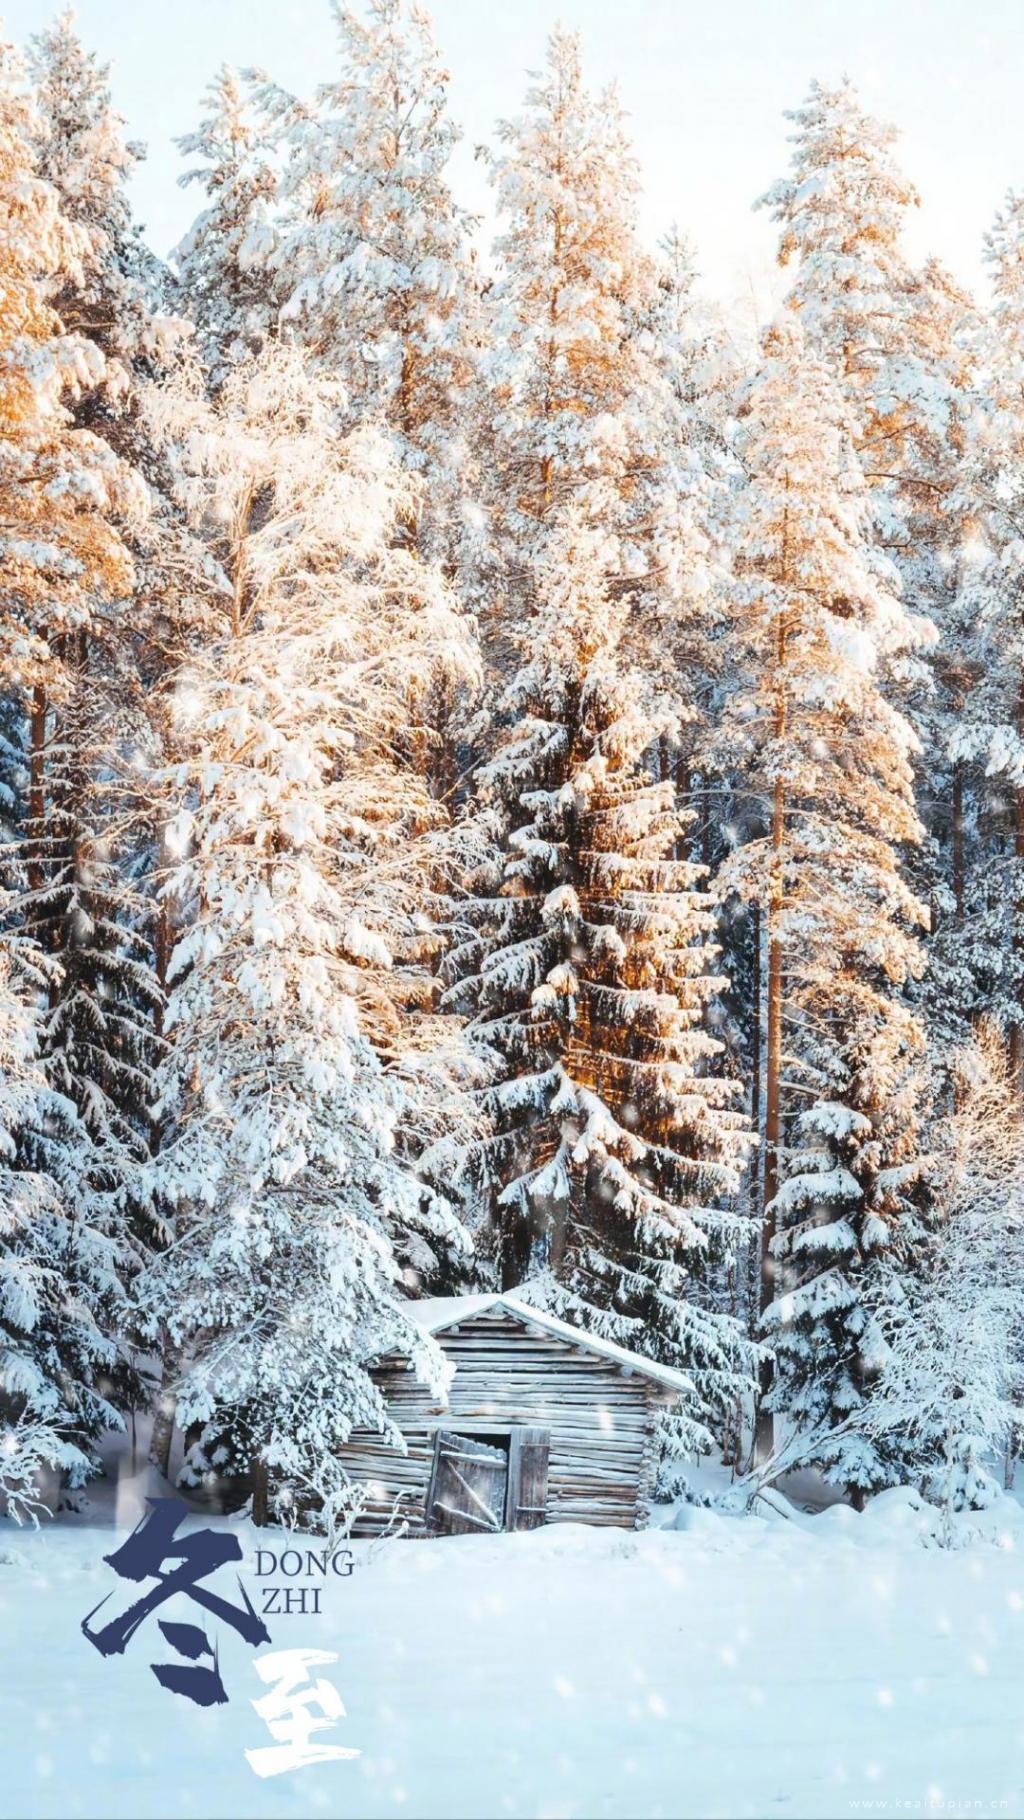 超美冬至雪景唯美手机背景壁纸图片